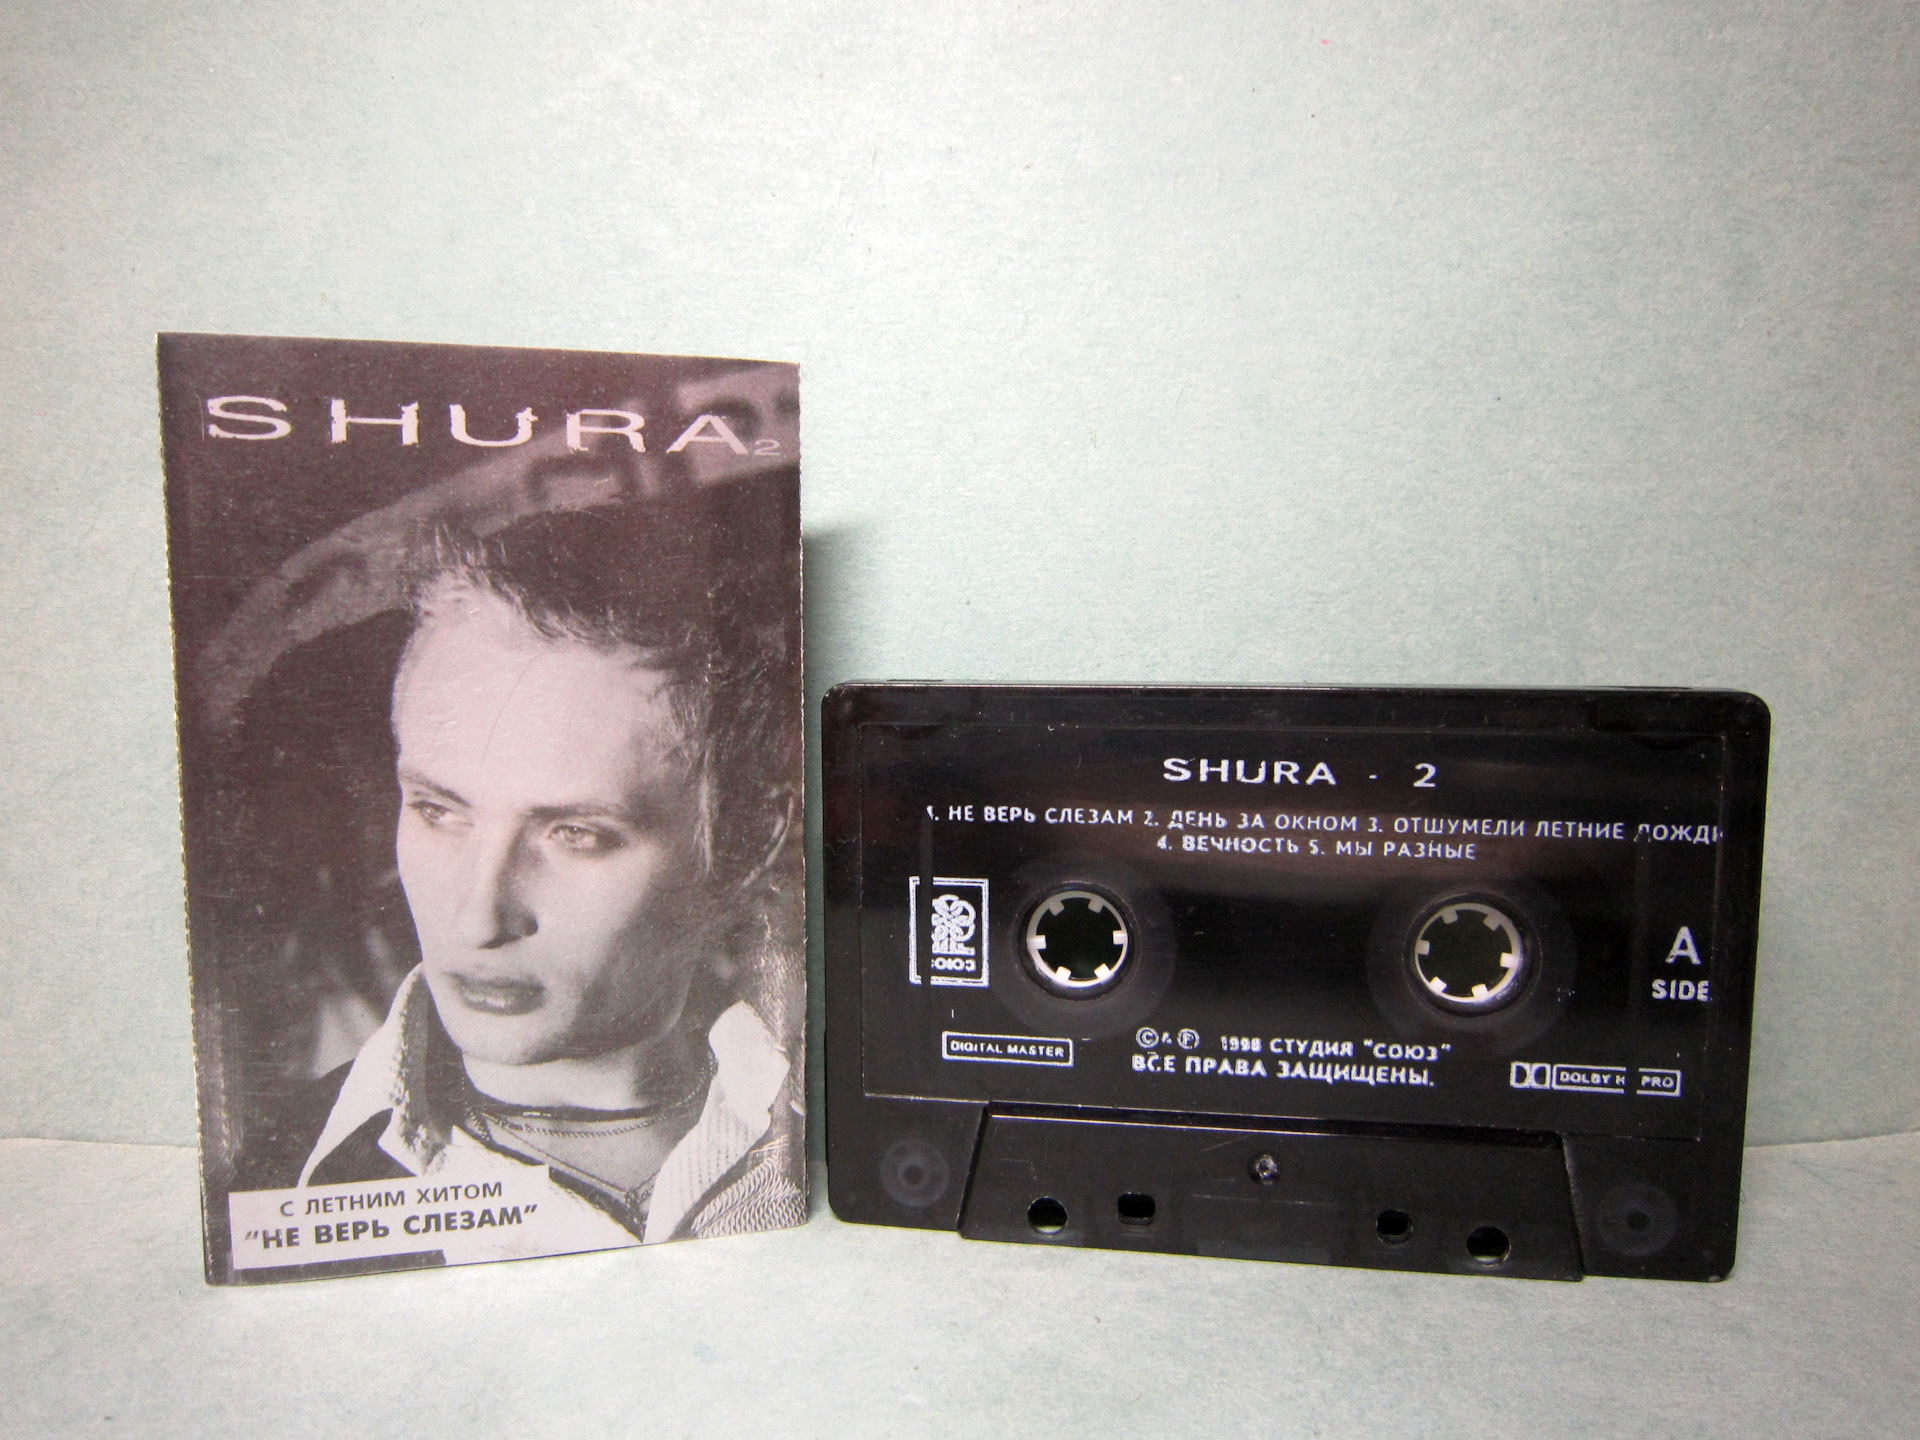 Черниговская ты не верь слезам. Shura 2 Шура кассета. Аудиокассеты Шура. Обложка аудиокассеты Шура. Первая кассета Шуры.